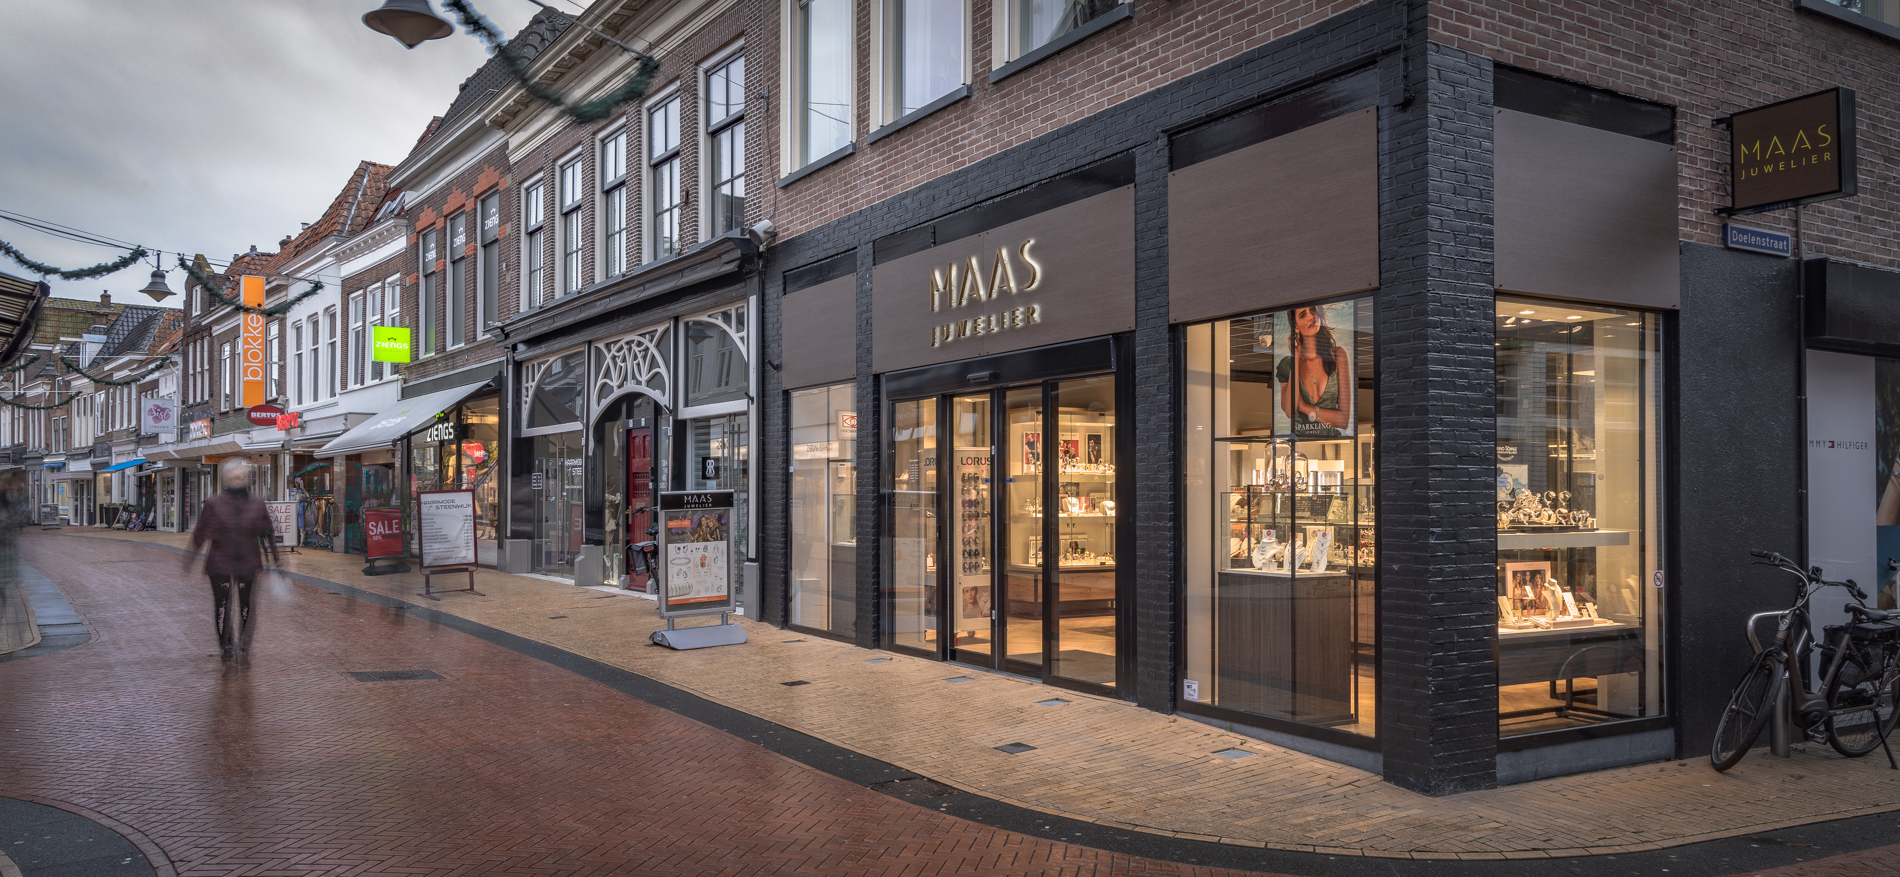 Juwelier Maas | Steenwijk (NL) - 